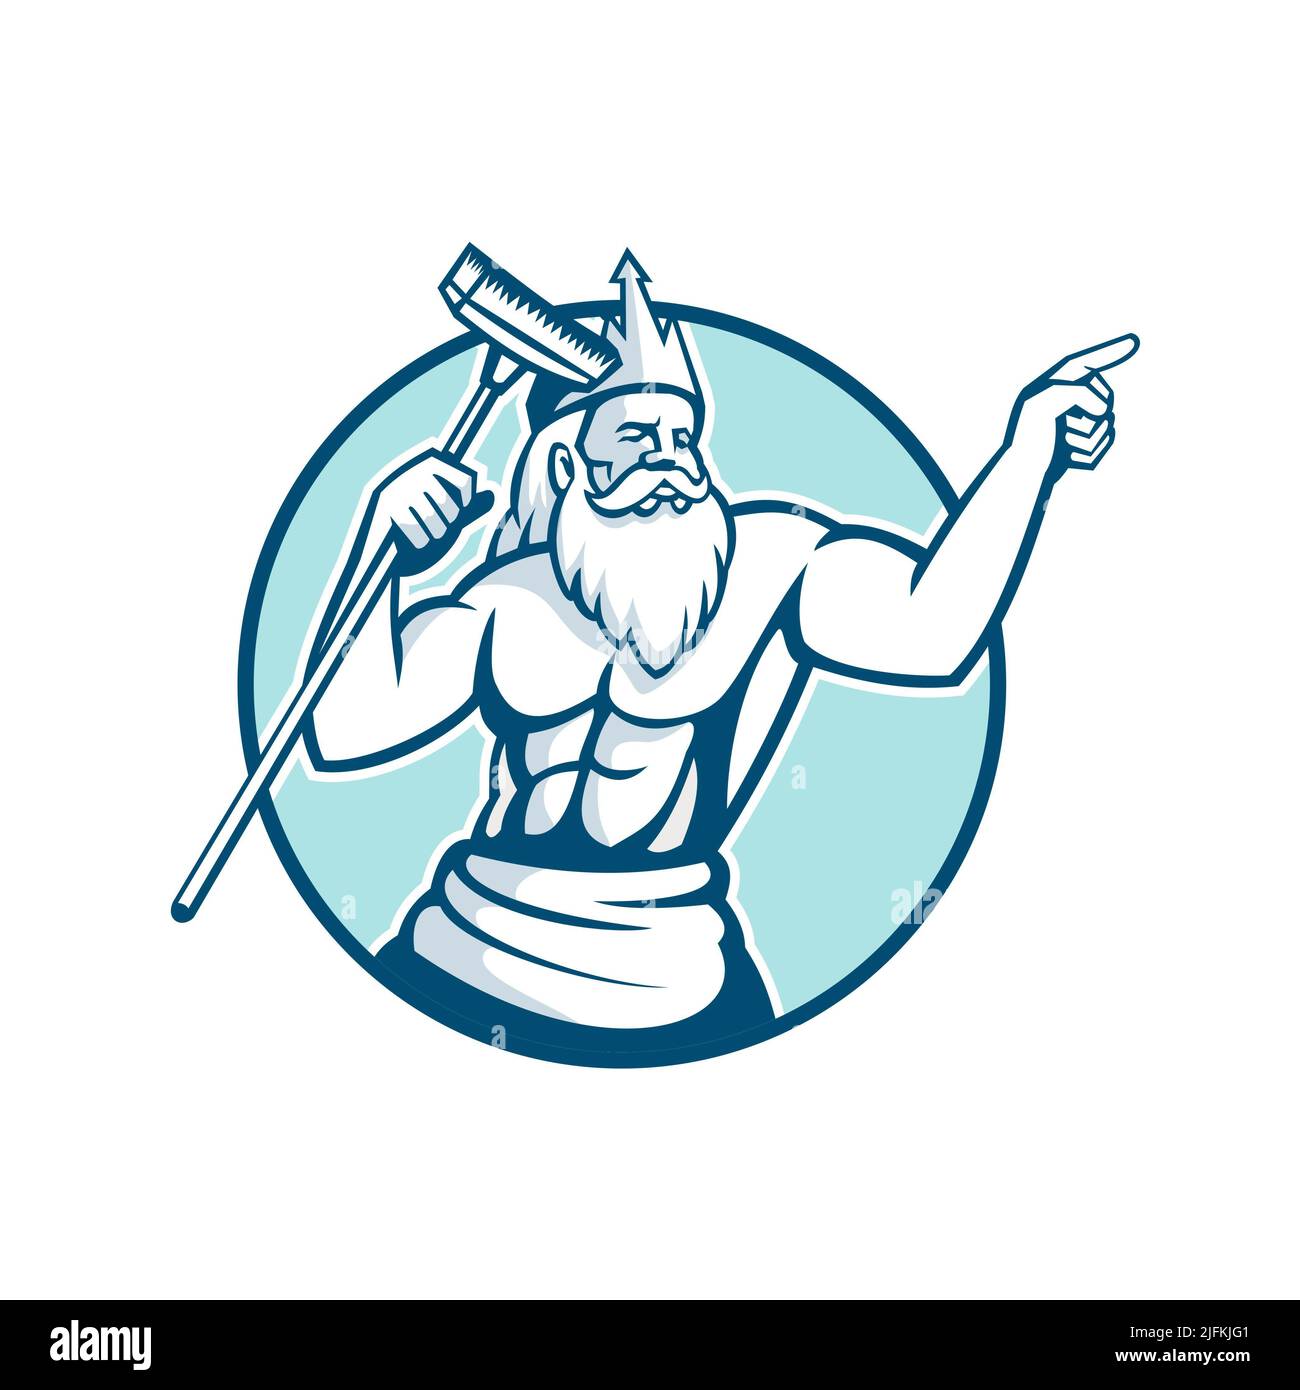 Icono de la mascota ilustración de Neptuno, dios del mar en la mitología romana o Poseidón en griego, sosteniendo un matorral de la piscina o limpiador del cepillo fijado Foto de stock